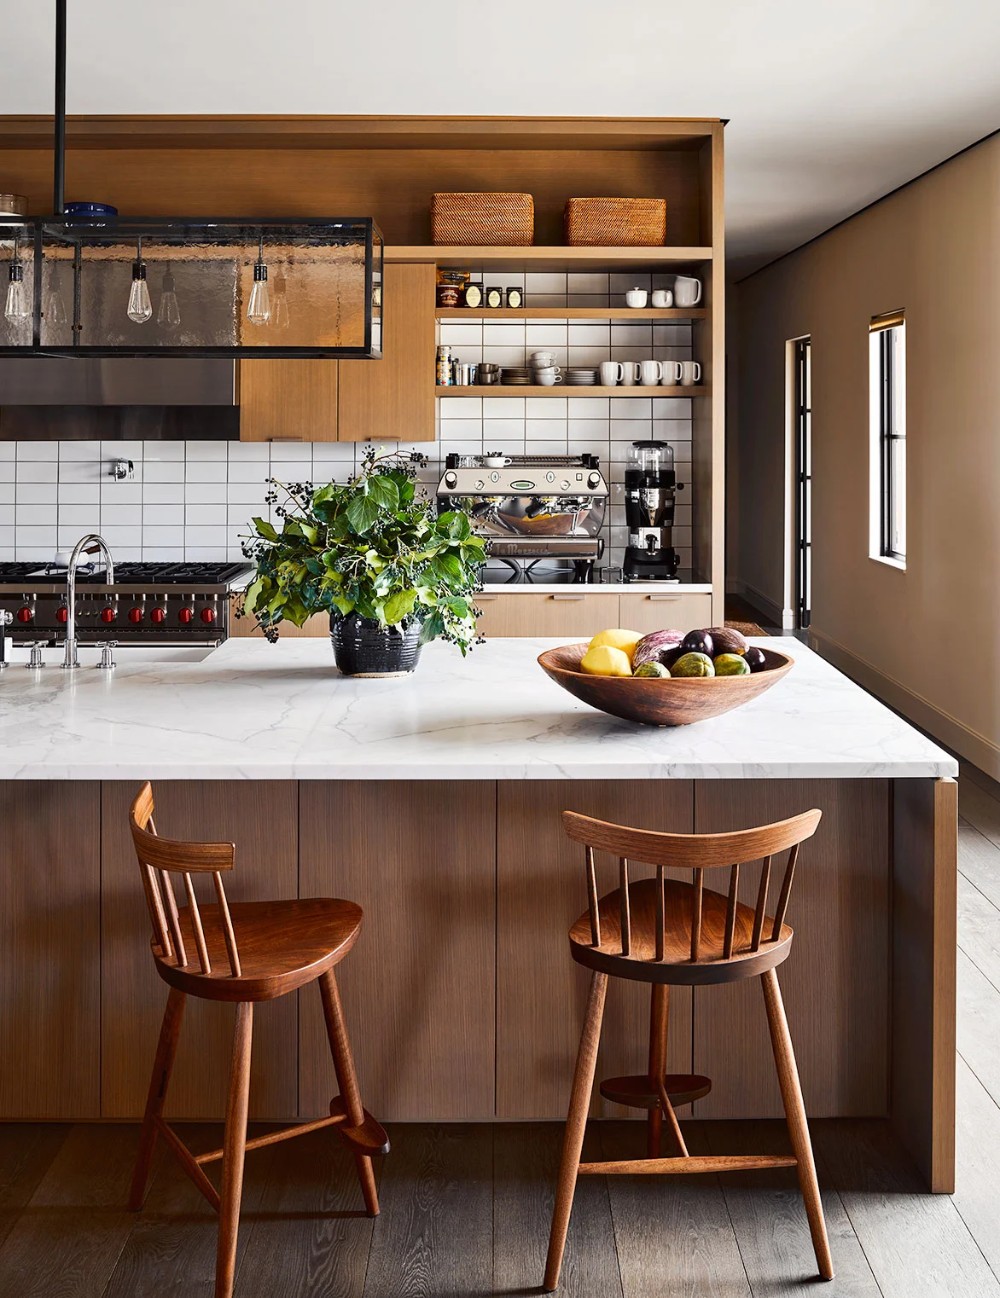 Cozinha com bancada: 6 ideias para deixar a decoração linda e organizada (Foto: Douglas Friedman)